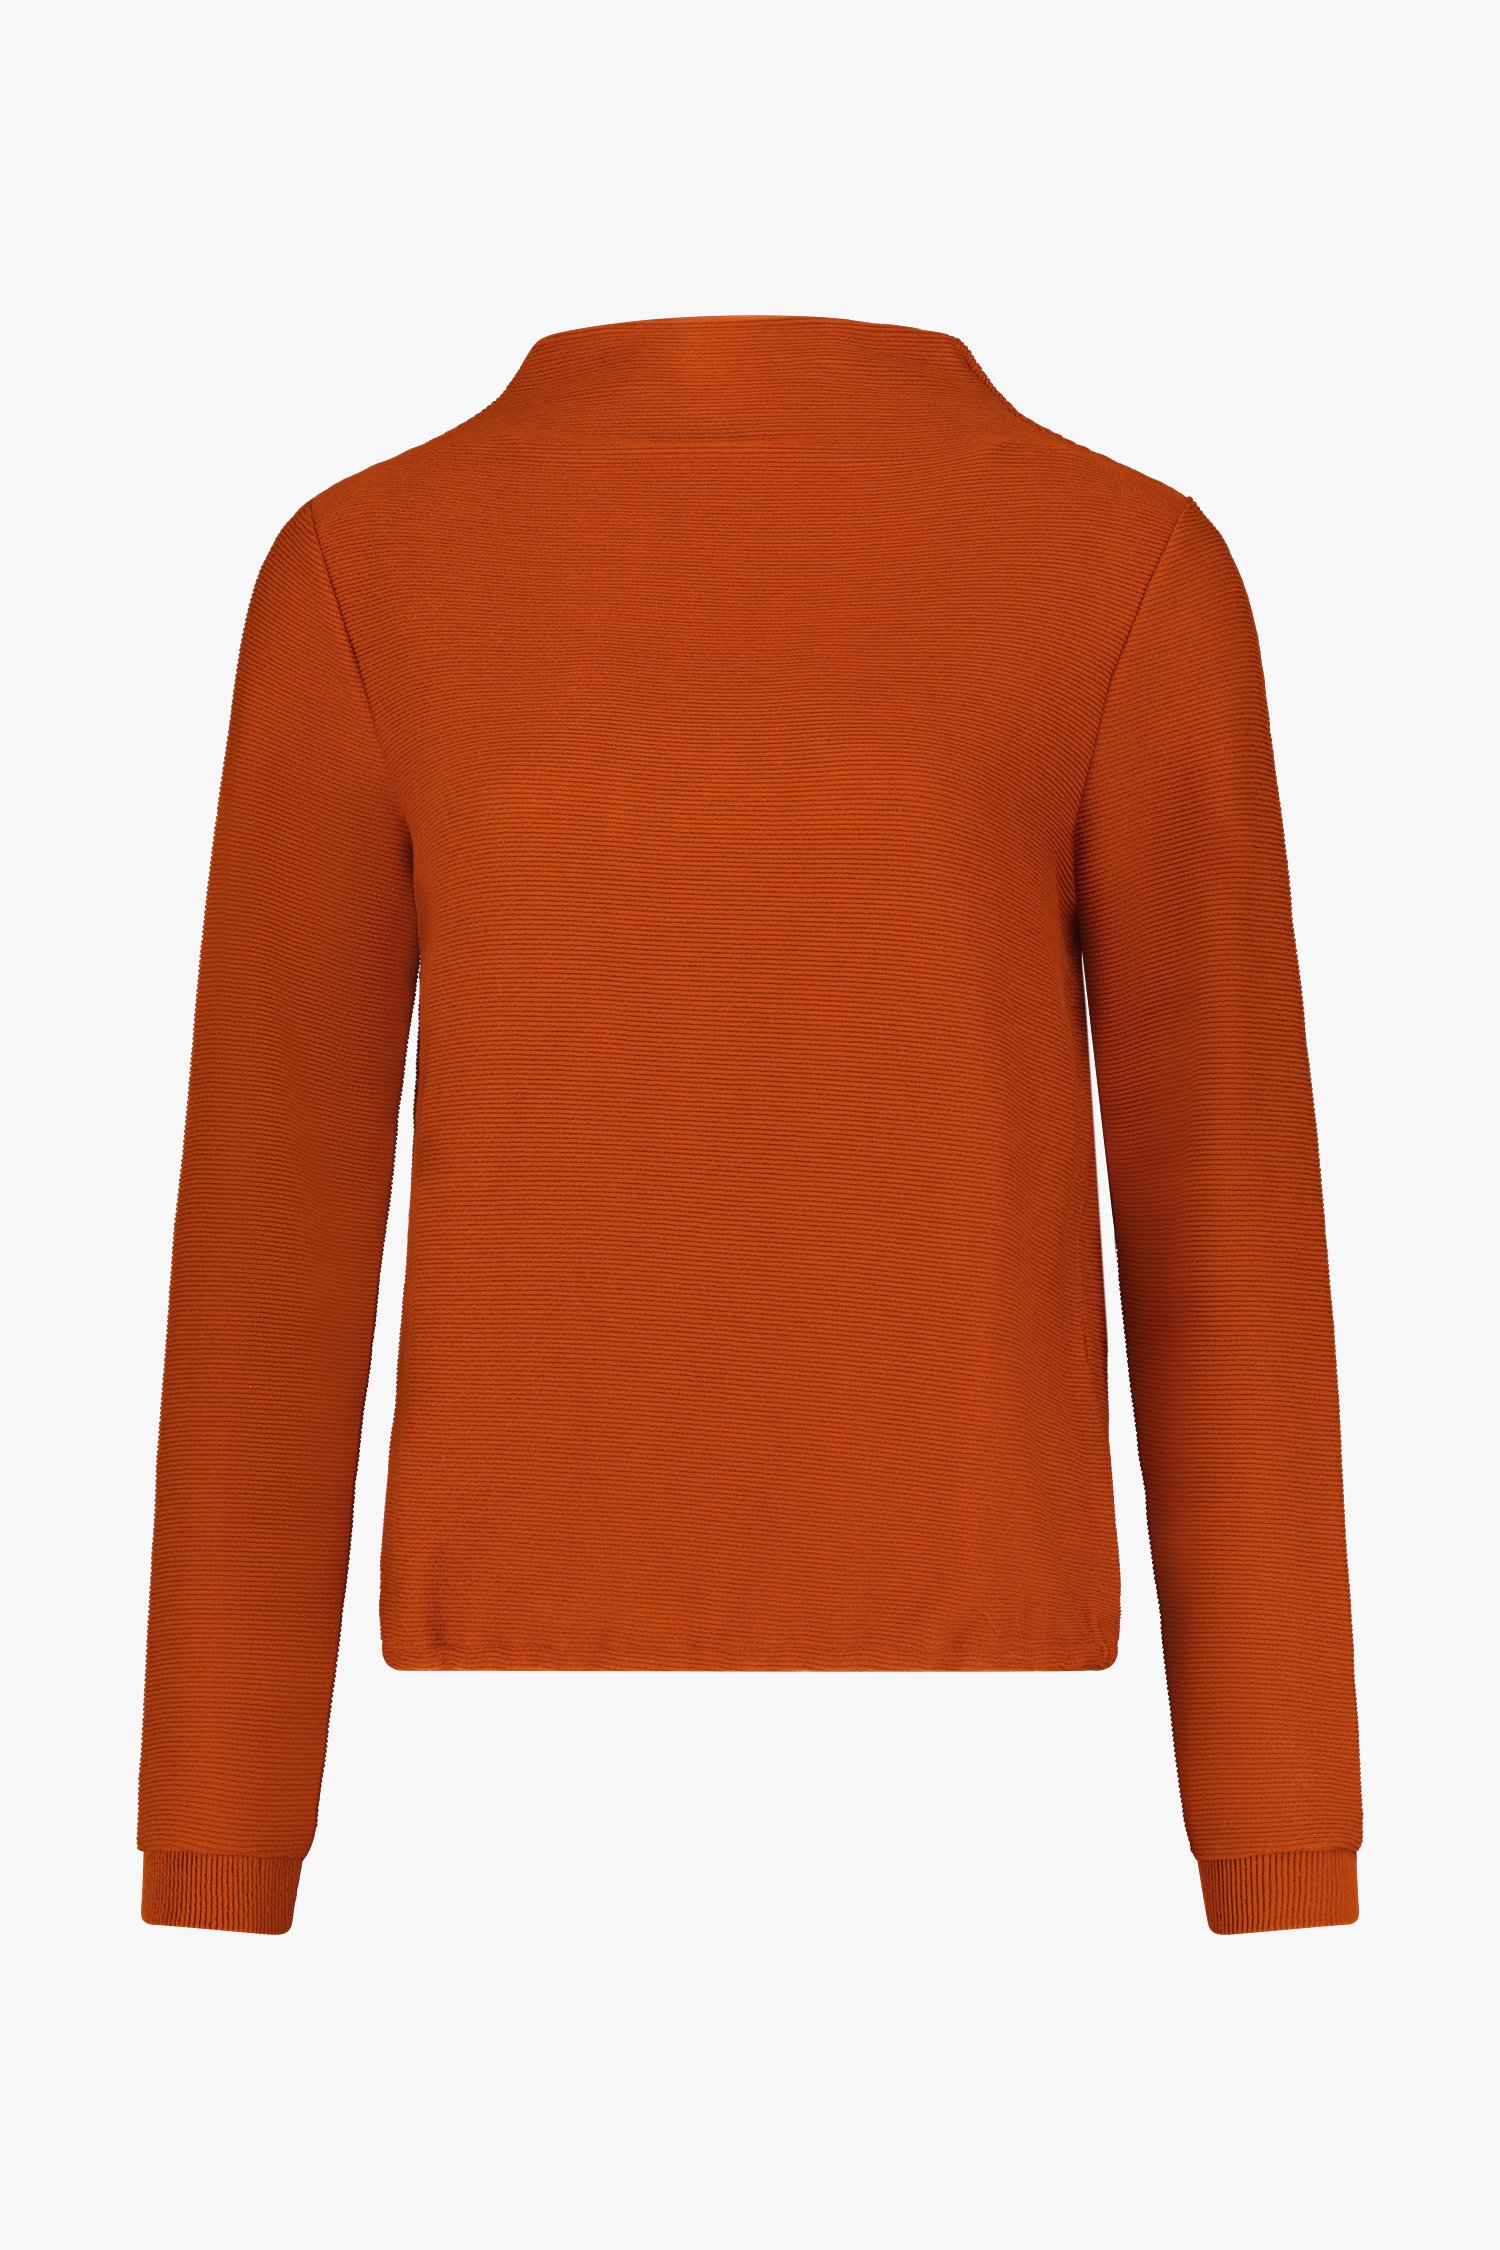 Oranjebruin T-shirt in ribstof  van Libelle voor Dames